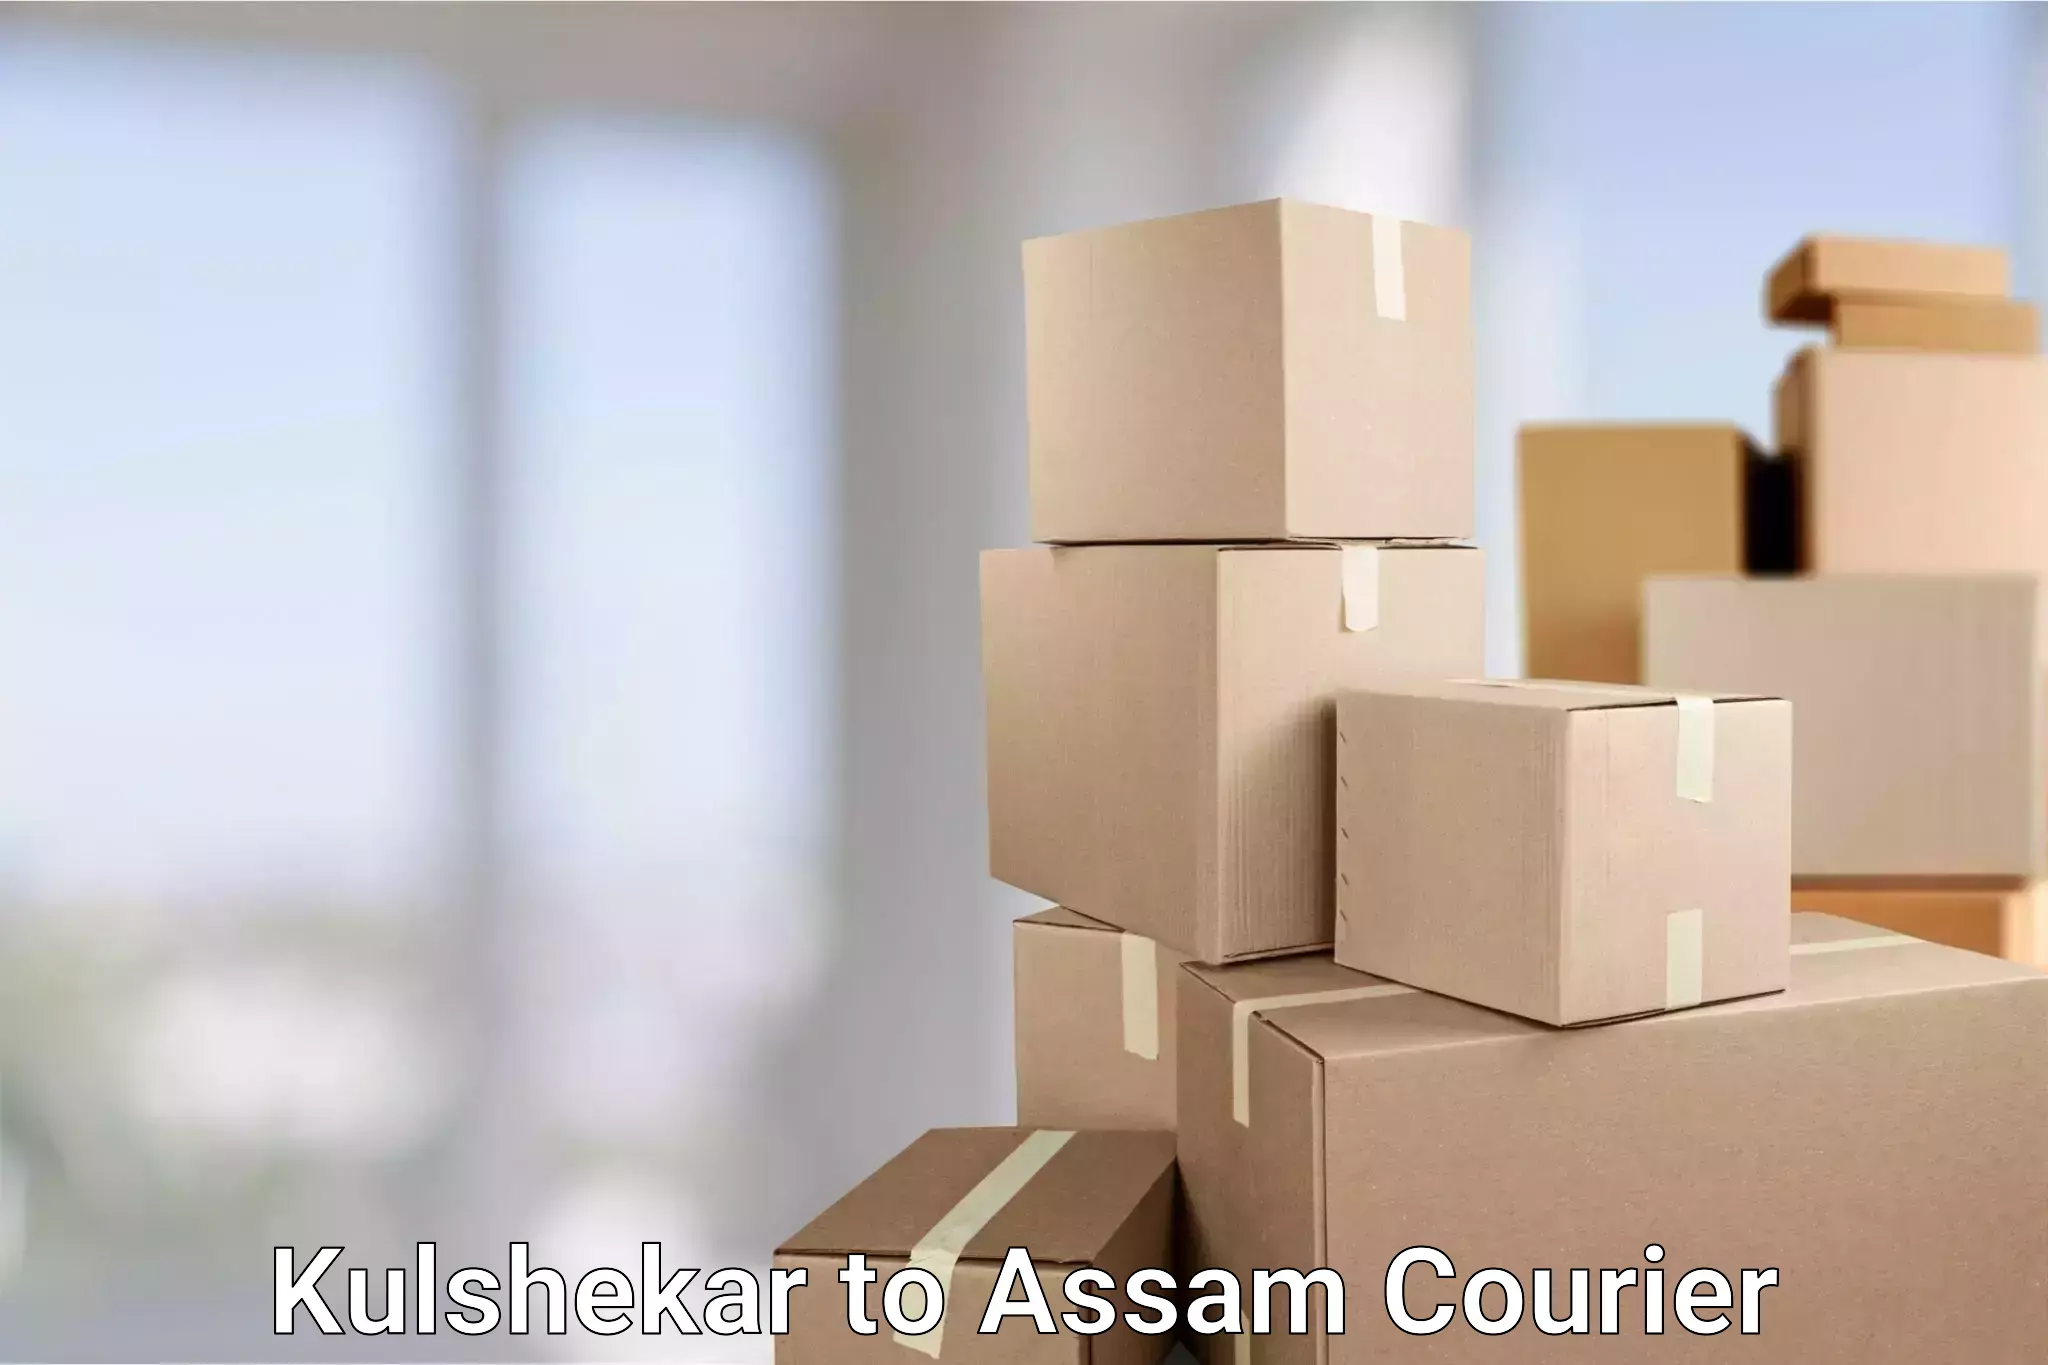 Fast delivery service Kulshekar to Assam